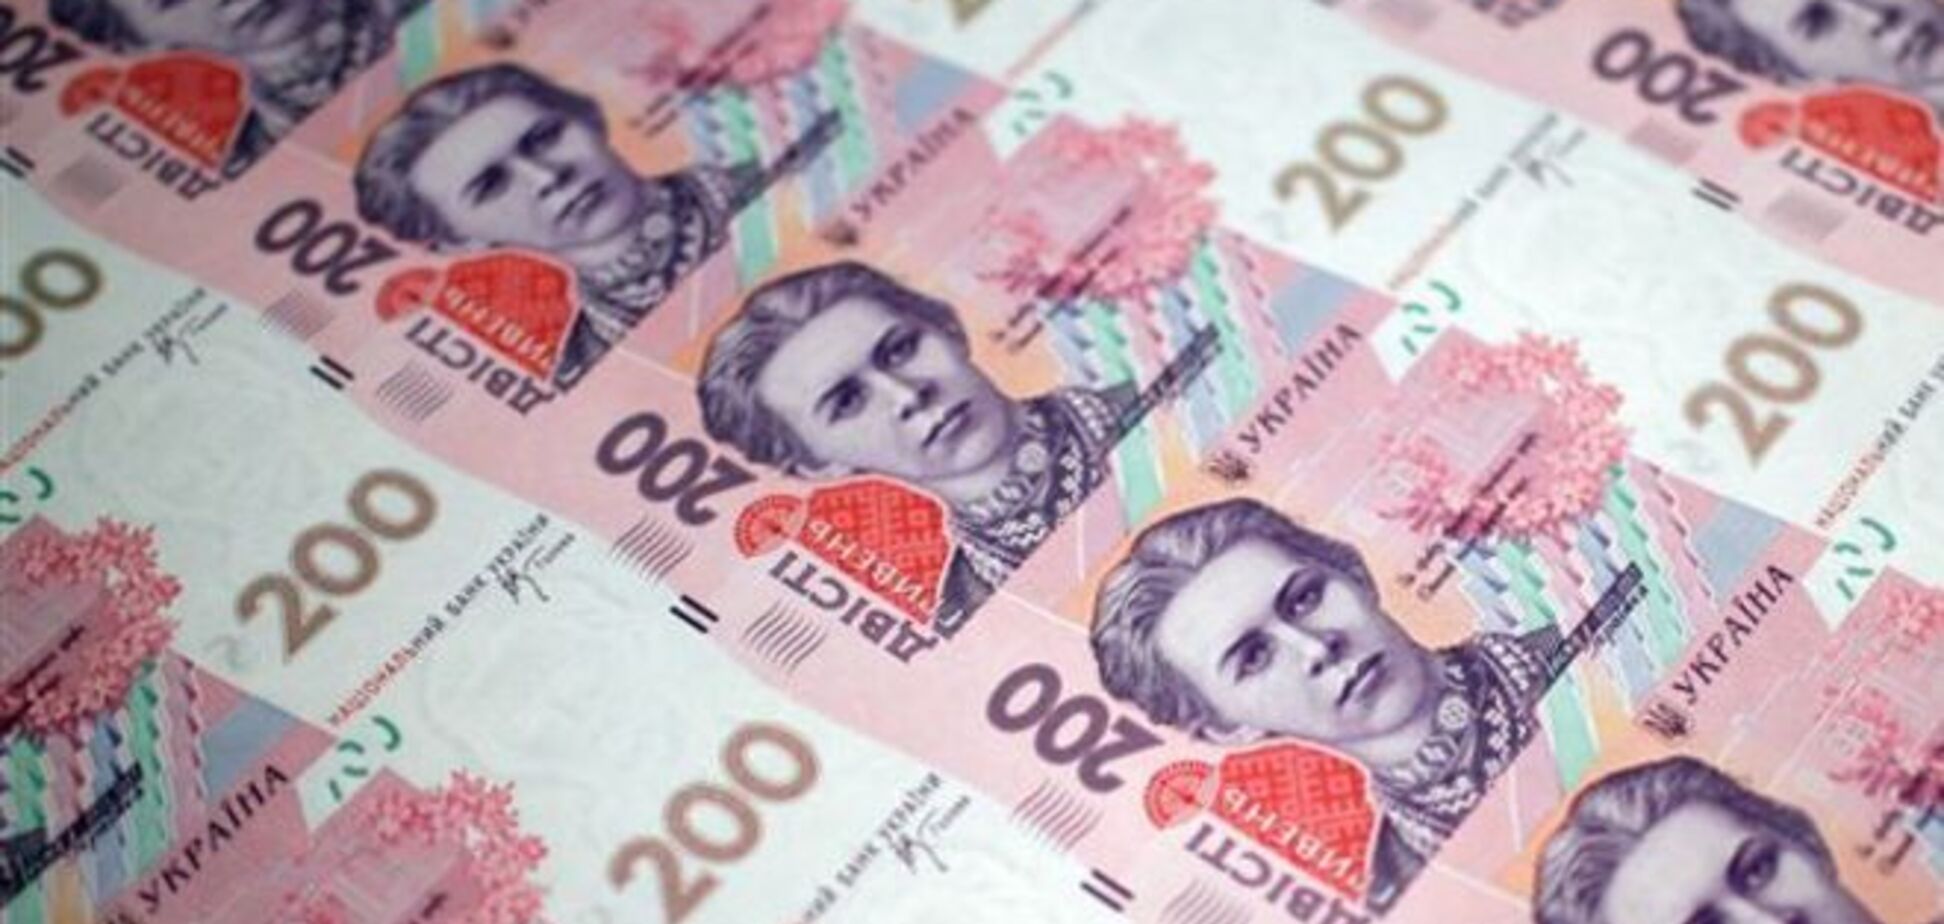 Цены в Украине выросли на 25-50%, а зарплаты остались прежними